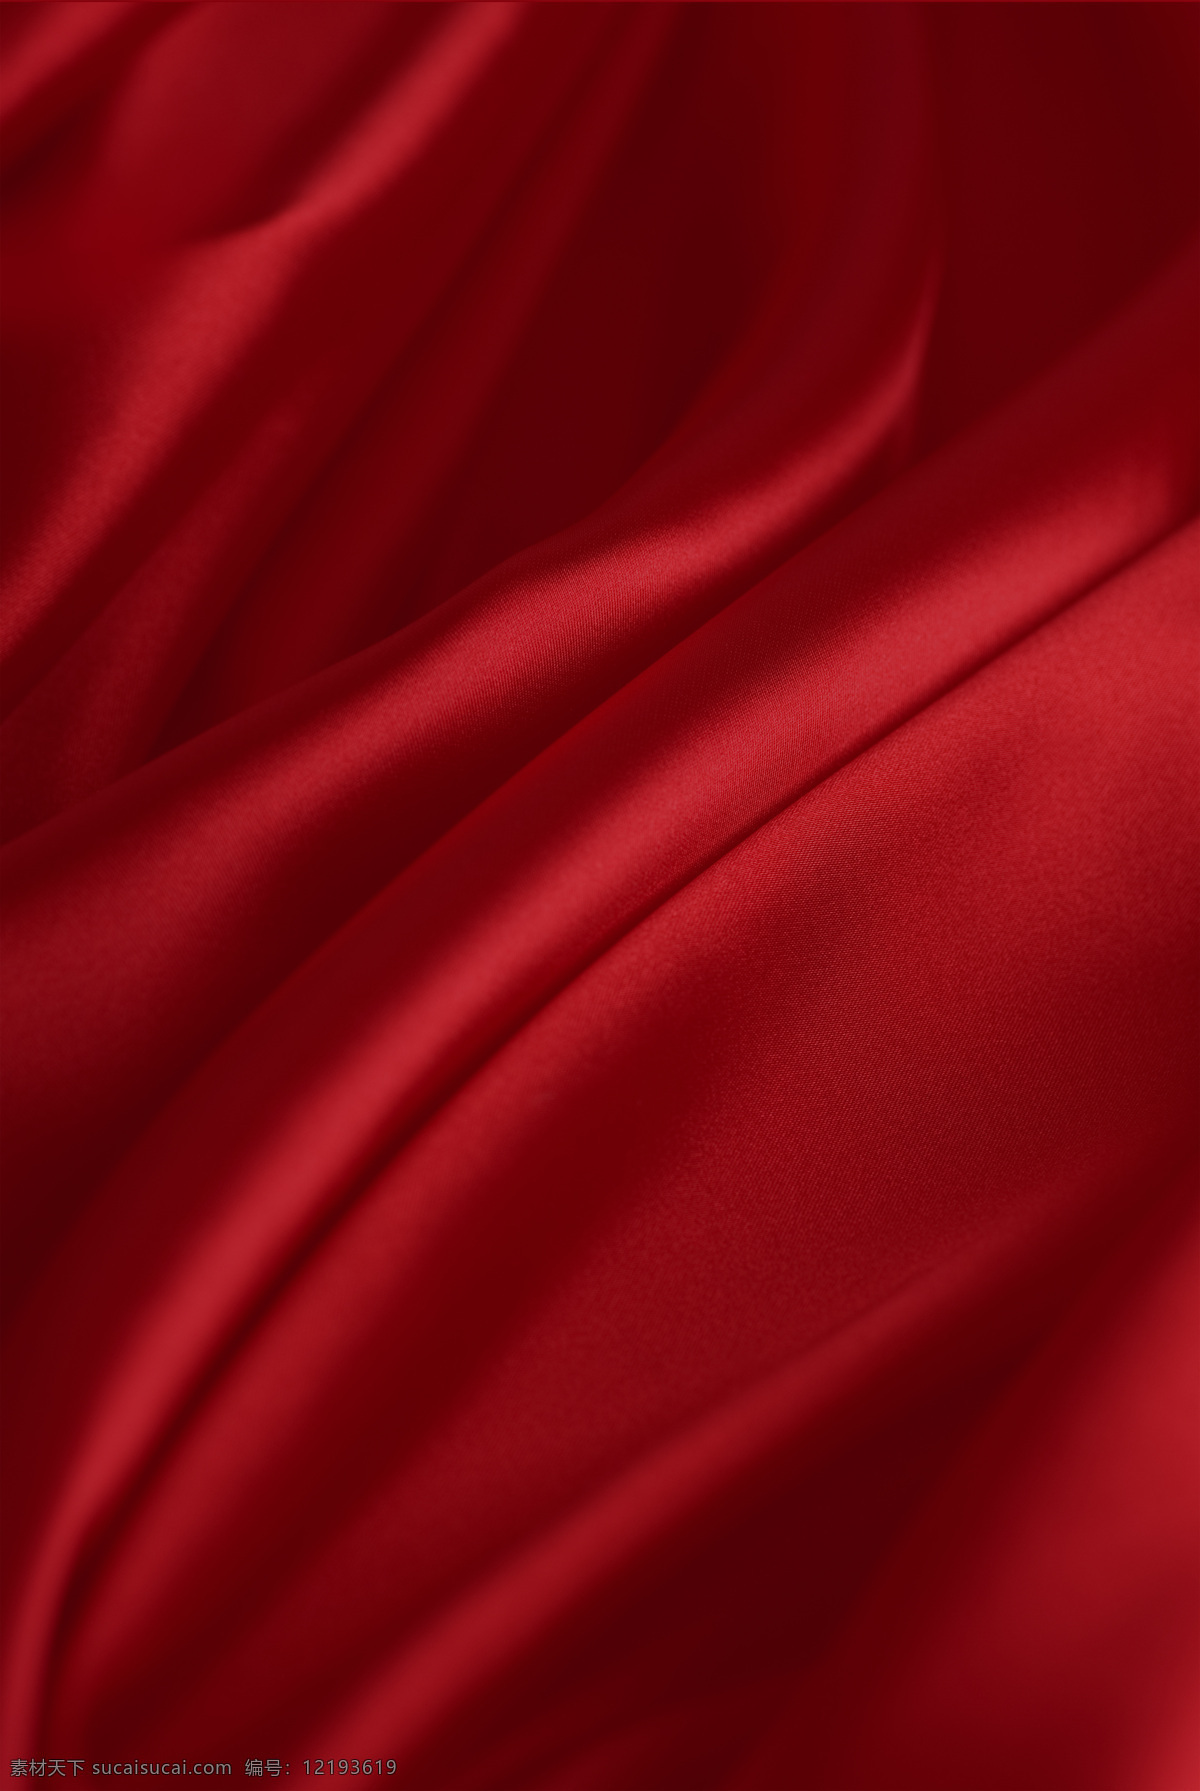 红色绸布背景 红绸布 绸布飘飘 大气红背景 正气红色 布材质 材质世界 移门图案 红色底纹 红色背景 肌理 材质 布料质感